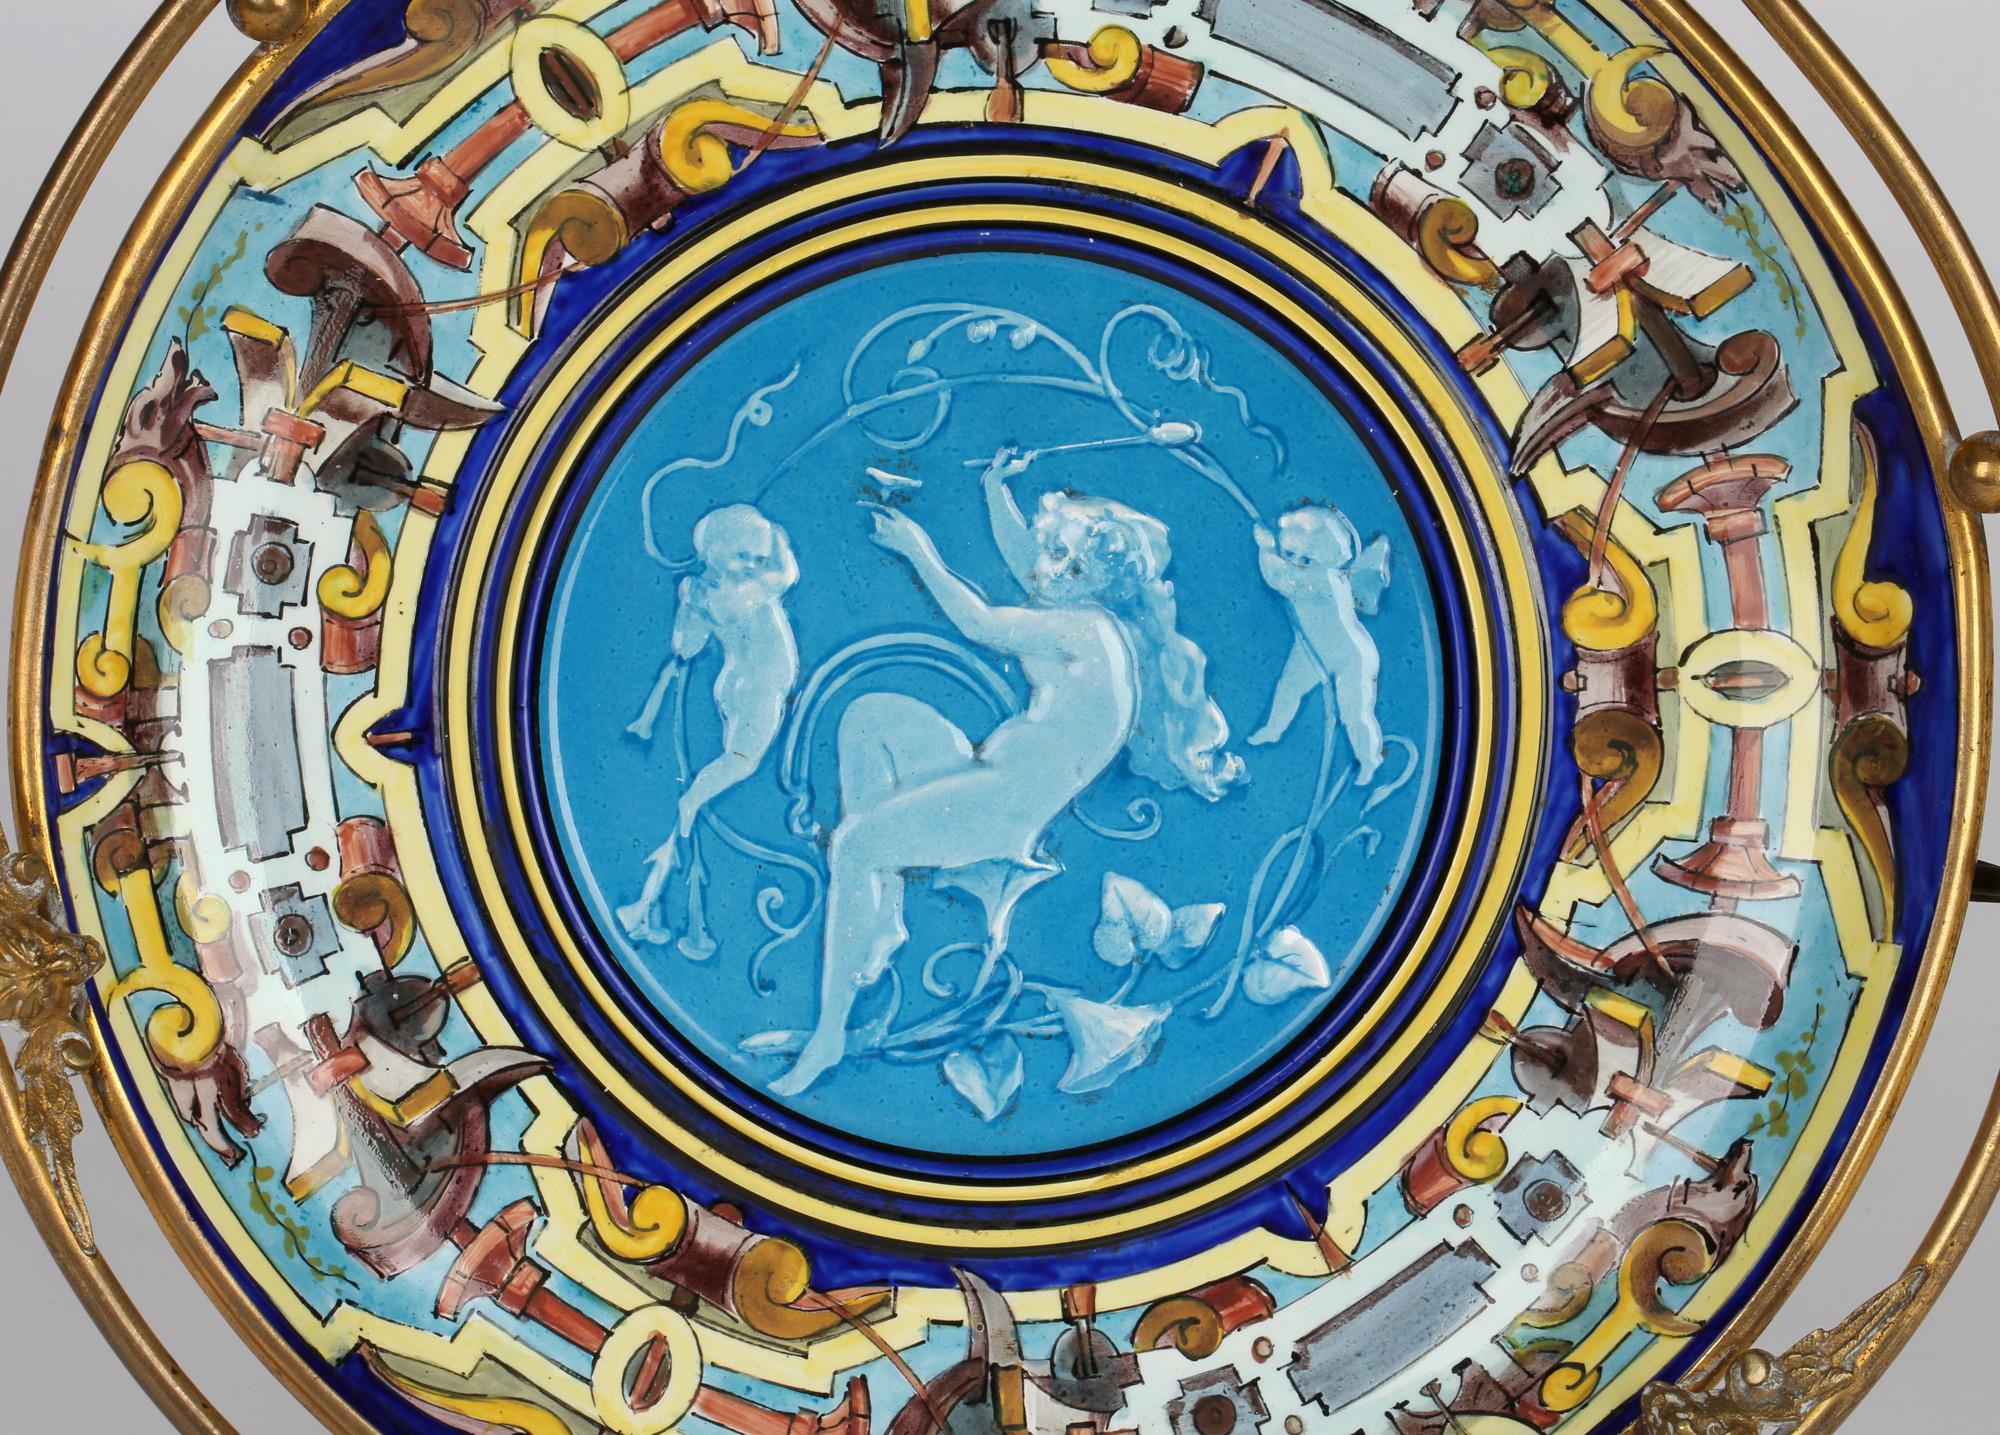 Eine sehr stilvolle und ungewöhnliche französische Majolika-Tazza in Ormolu-Montierung mit Figuren in einem abstrakten Muster, die Theodore Deck (1823-1891) zugeschrieben wird und vermutlich aus der Zeit um 1880 stammt. Die Majolika-Schale steht in